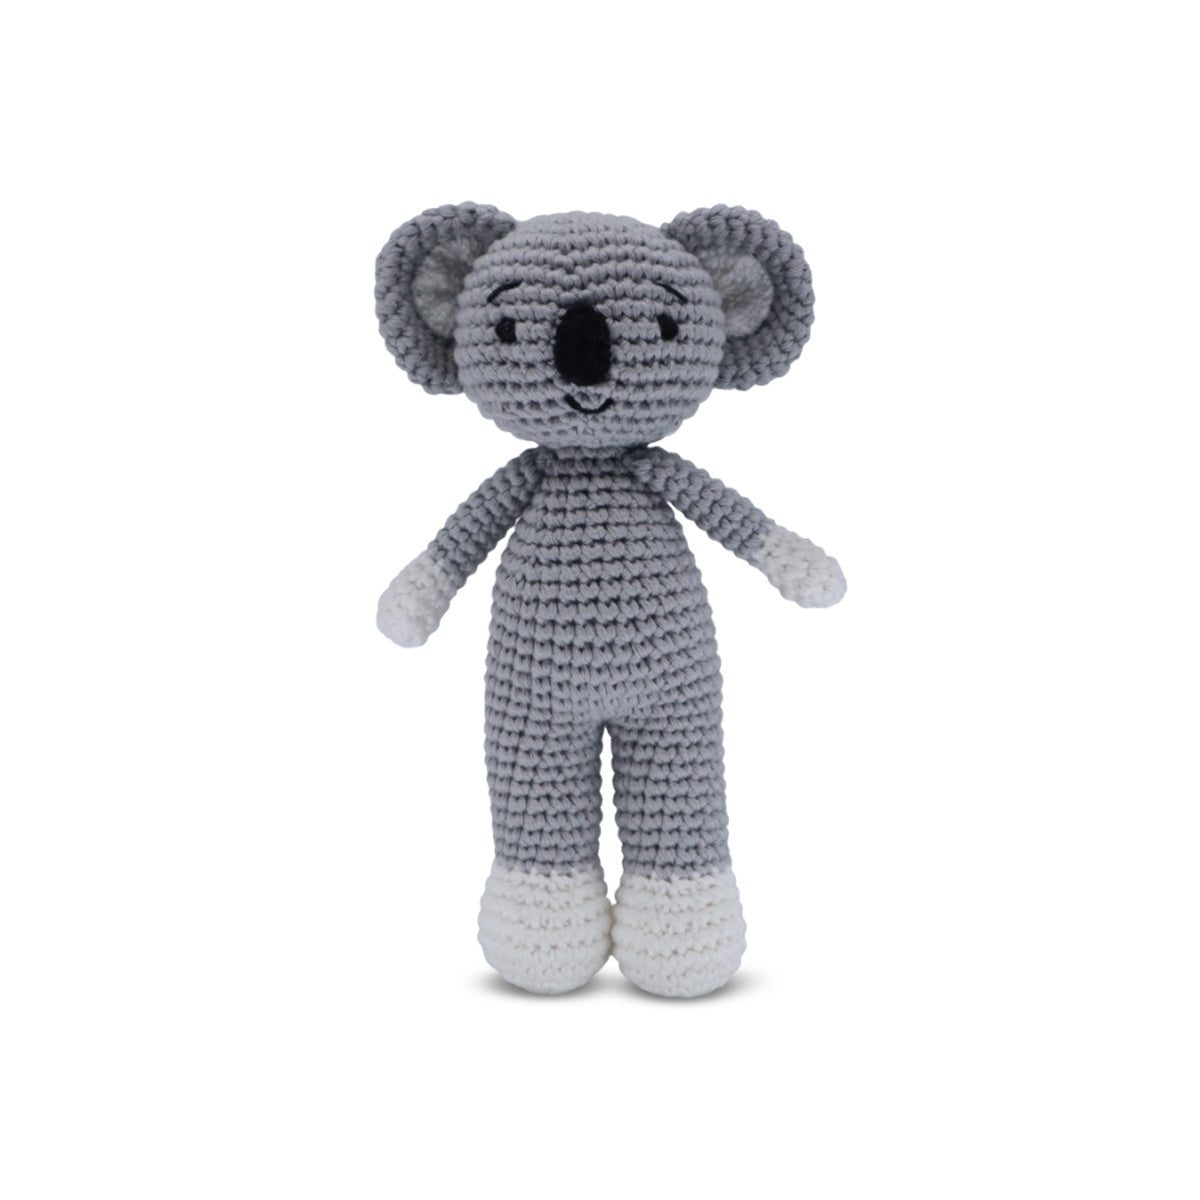 Snuggle Buddies Mini Standing Toy - Koala